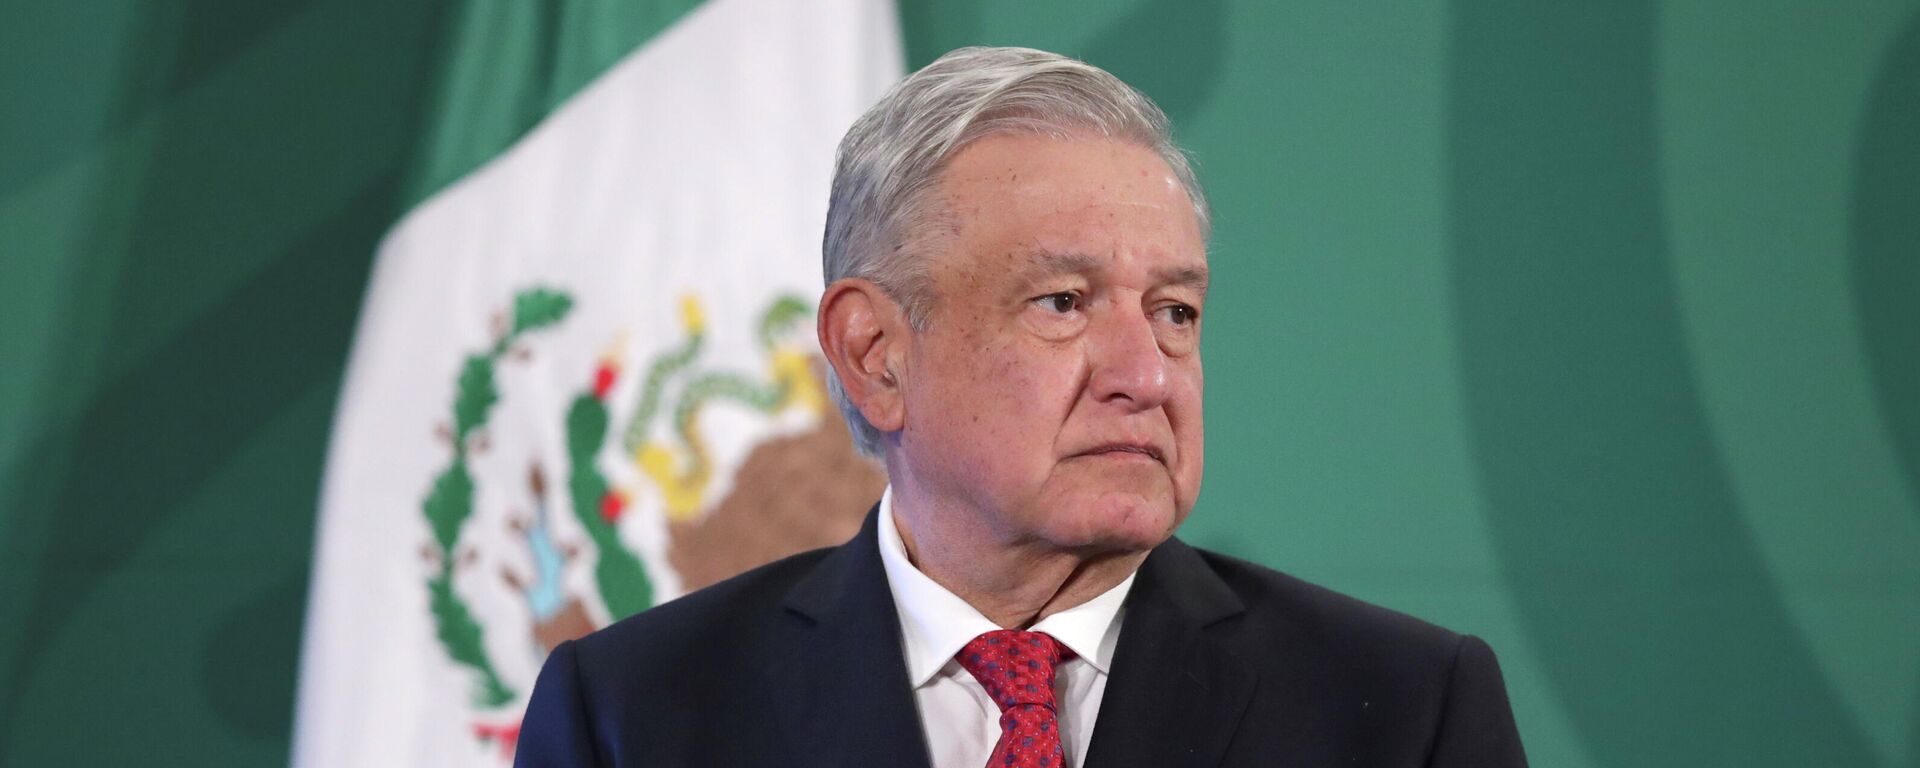 Andrés Manuel López Obrador, presidente de México - Sputnik Mundo, 1920, 24.09.2021